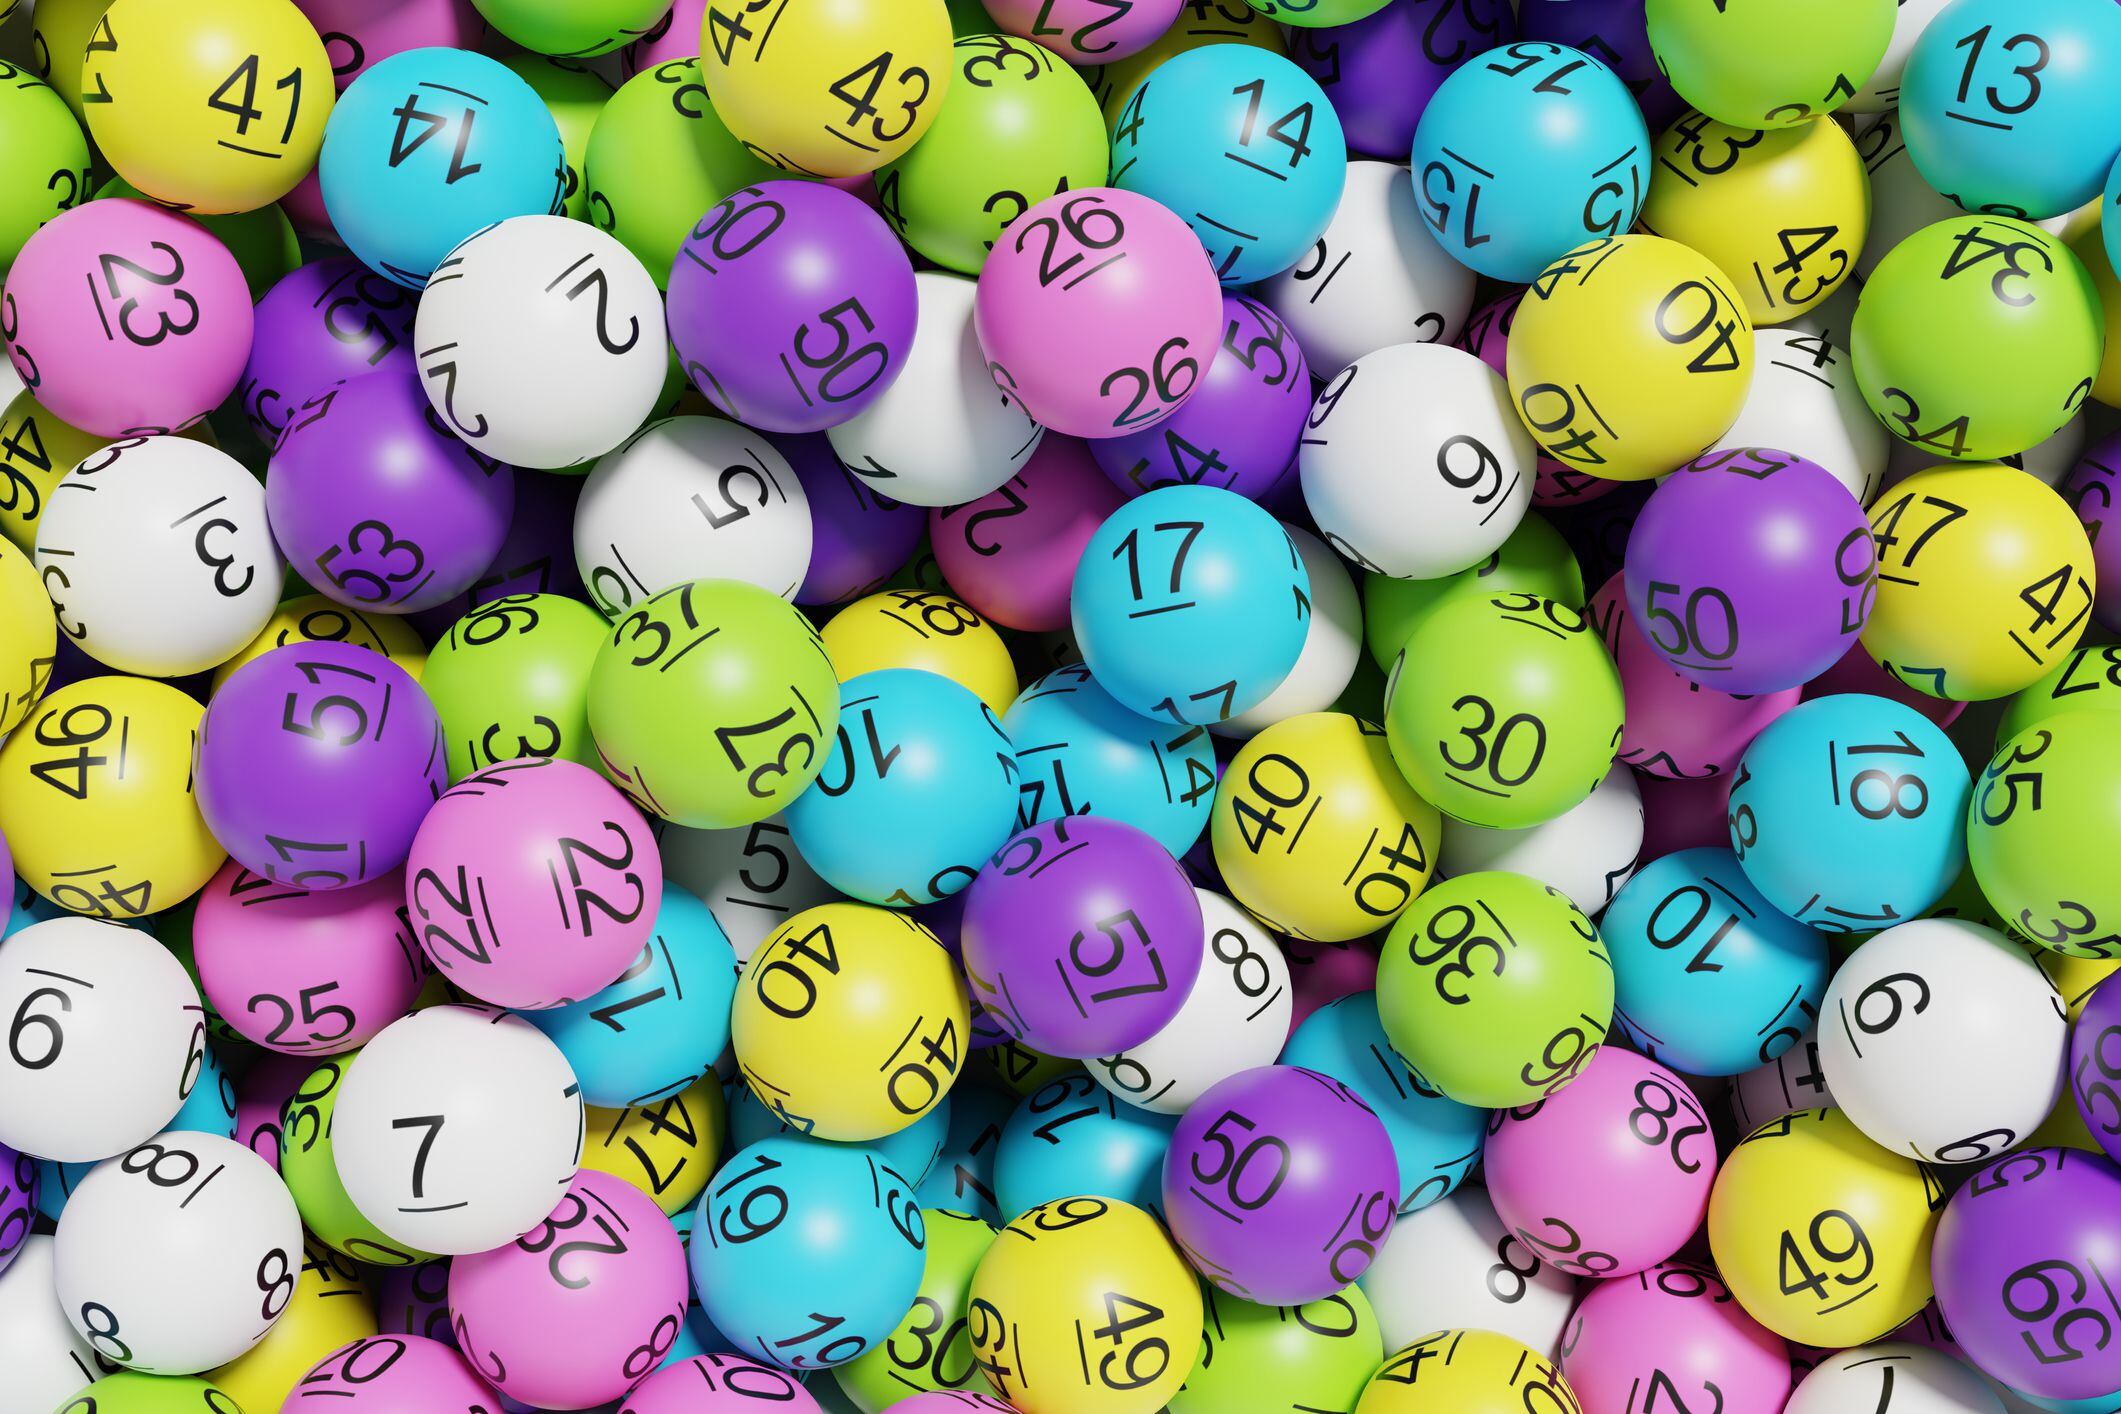 inteligencia artificial revela el truco más efectivo para calcular su número de la suerte y ganar la lotería